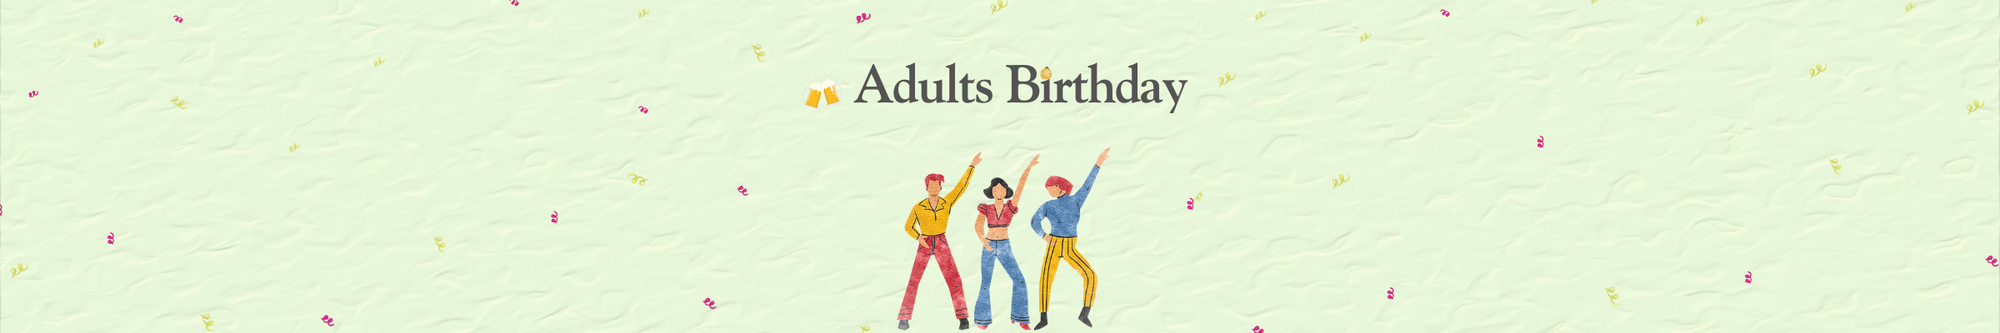 cumpleaños de adultos